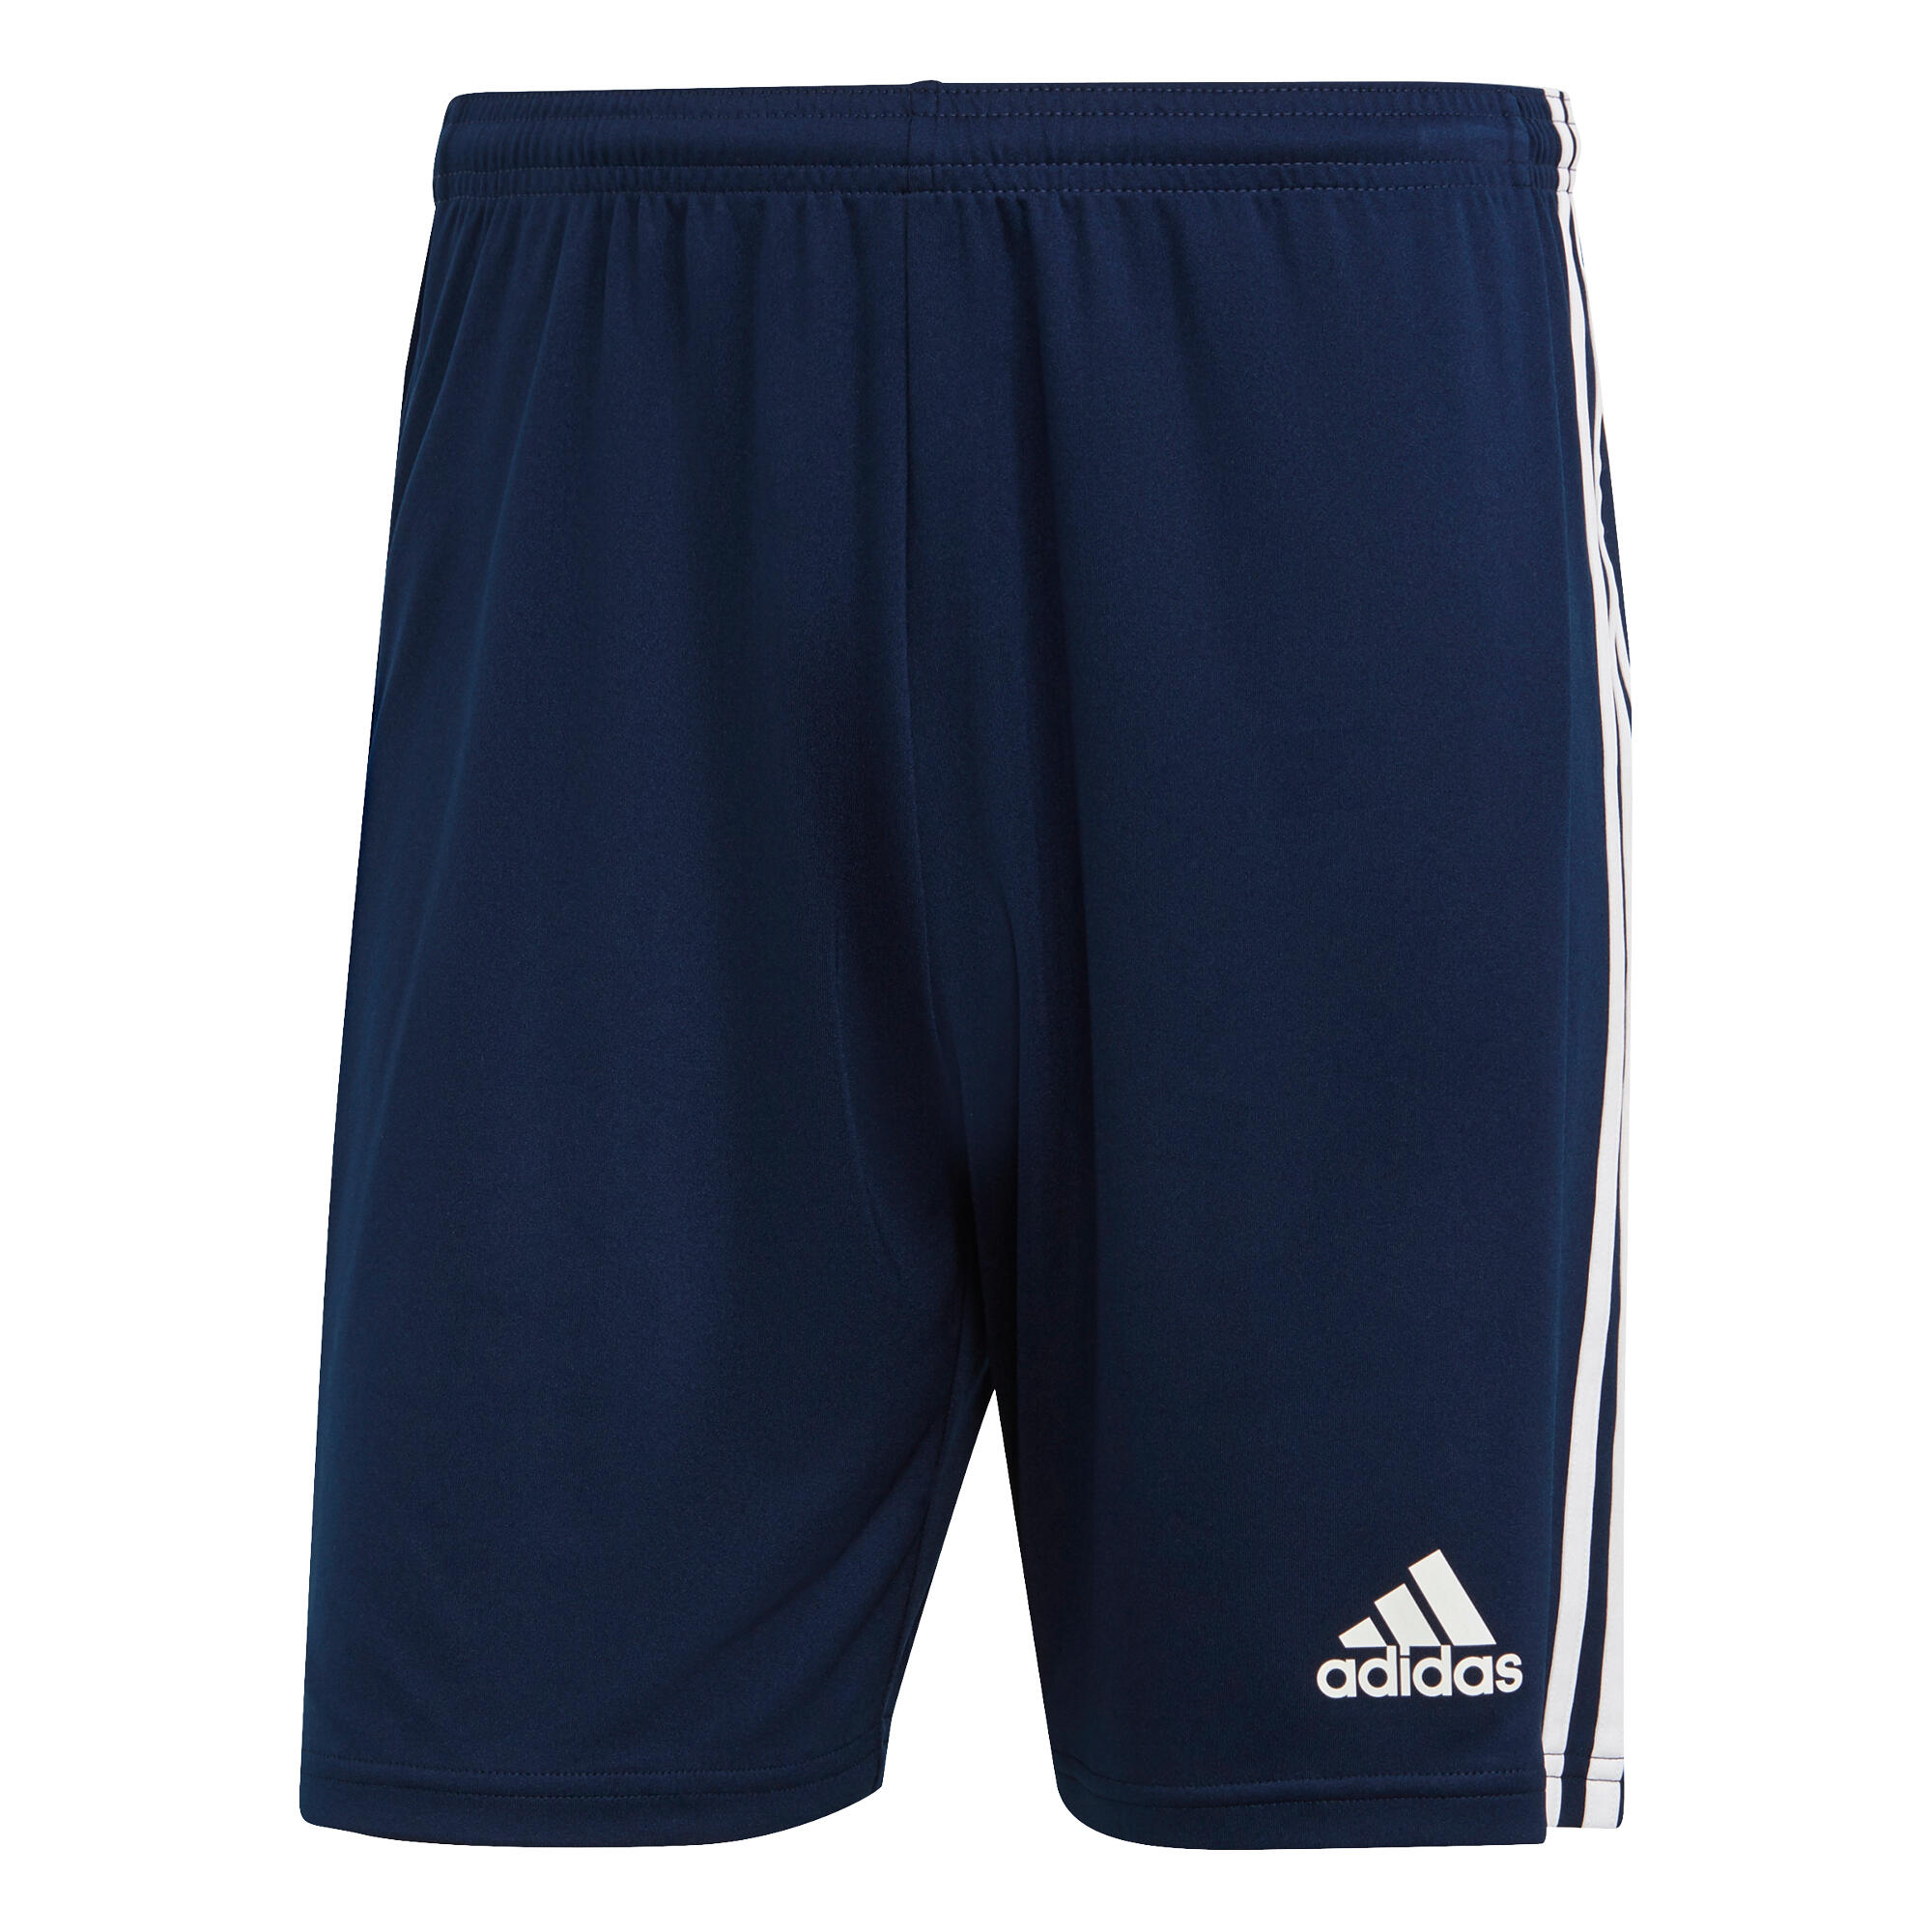 Decathlon | Pantaloncini calcio uomo ADIDAS SQUADRA blu |  Adidas